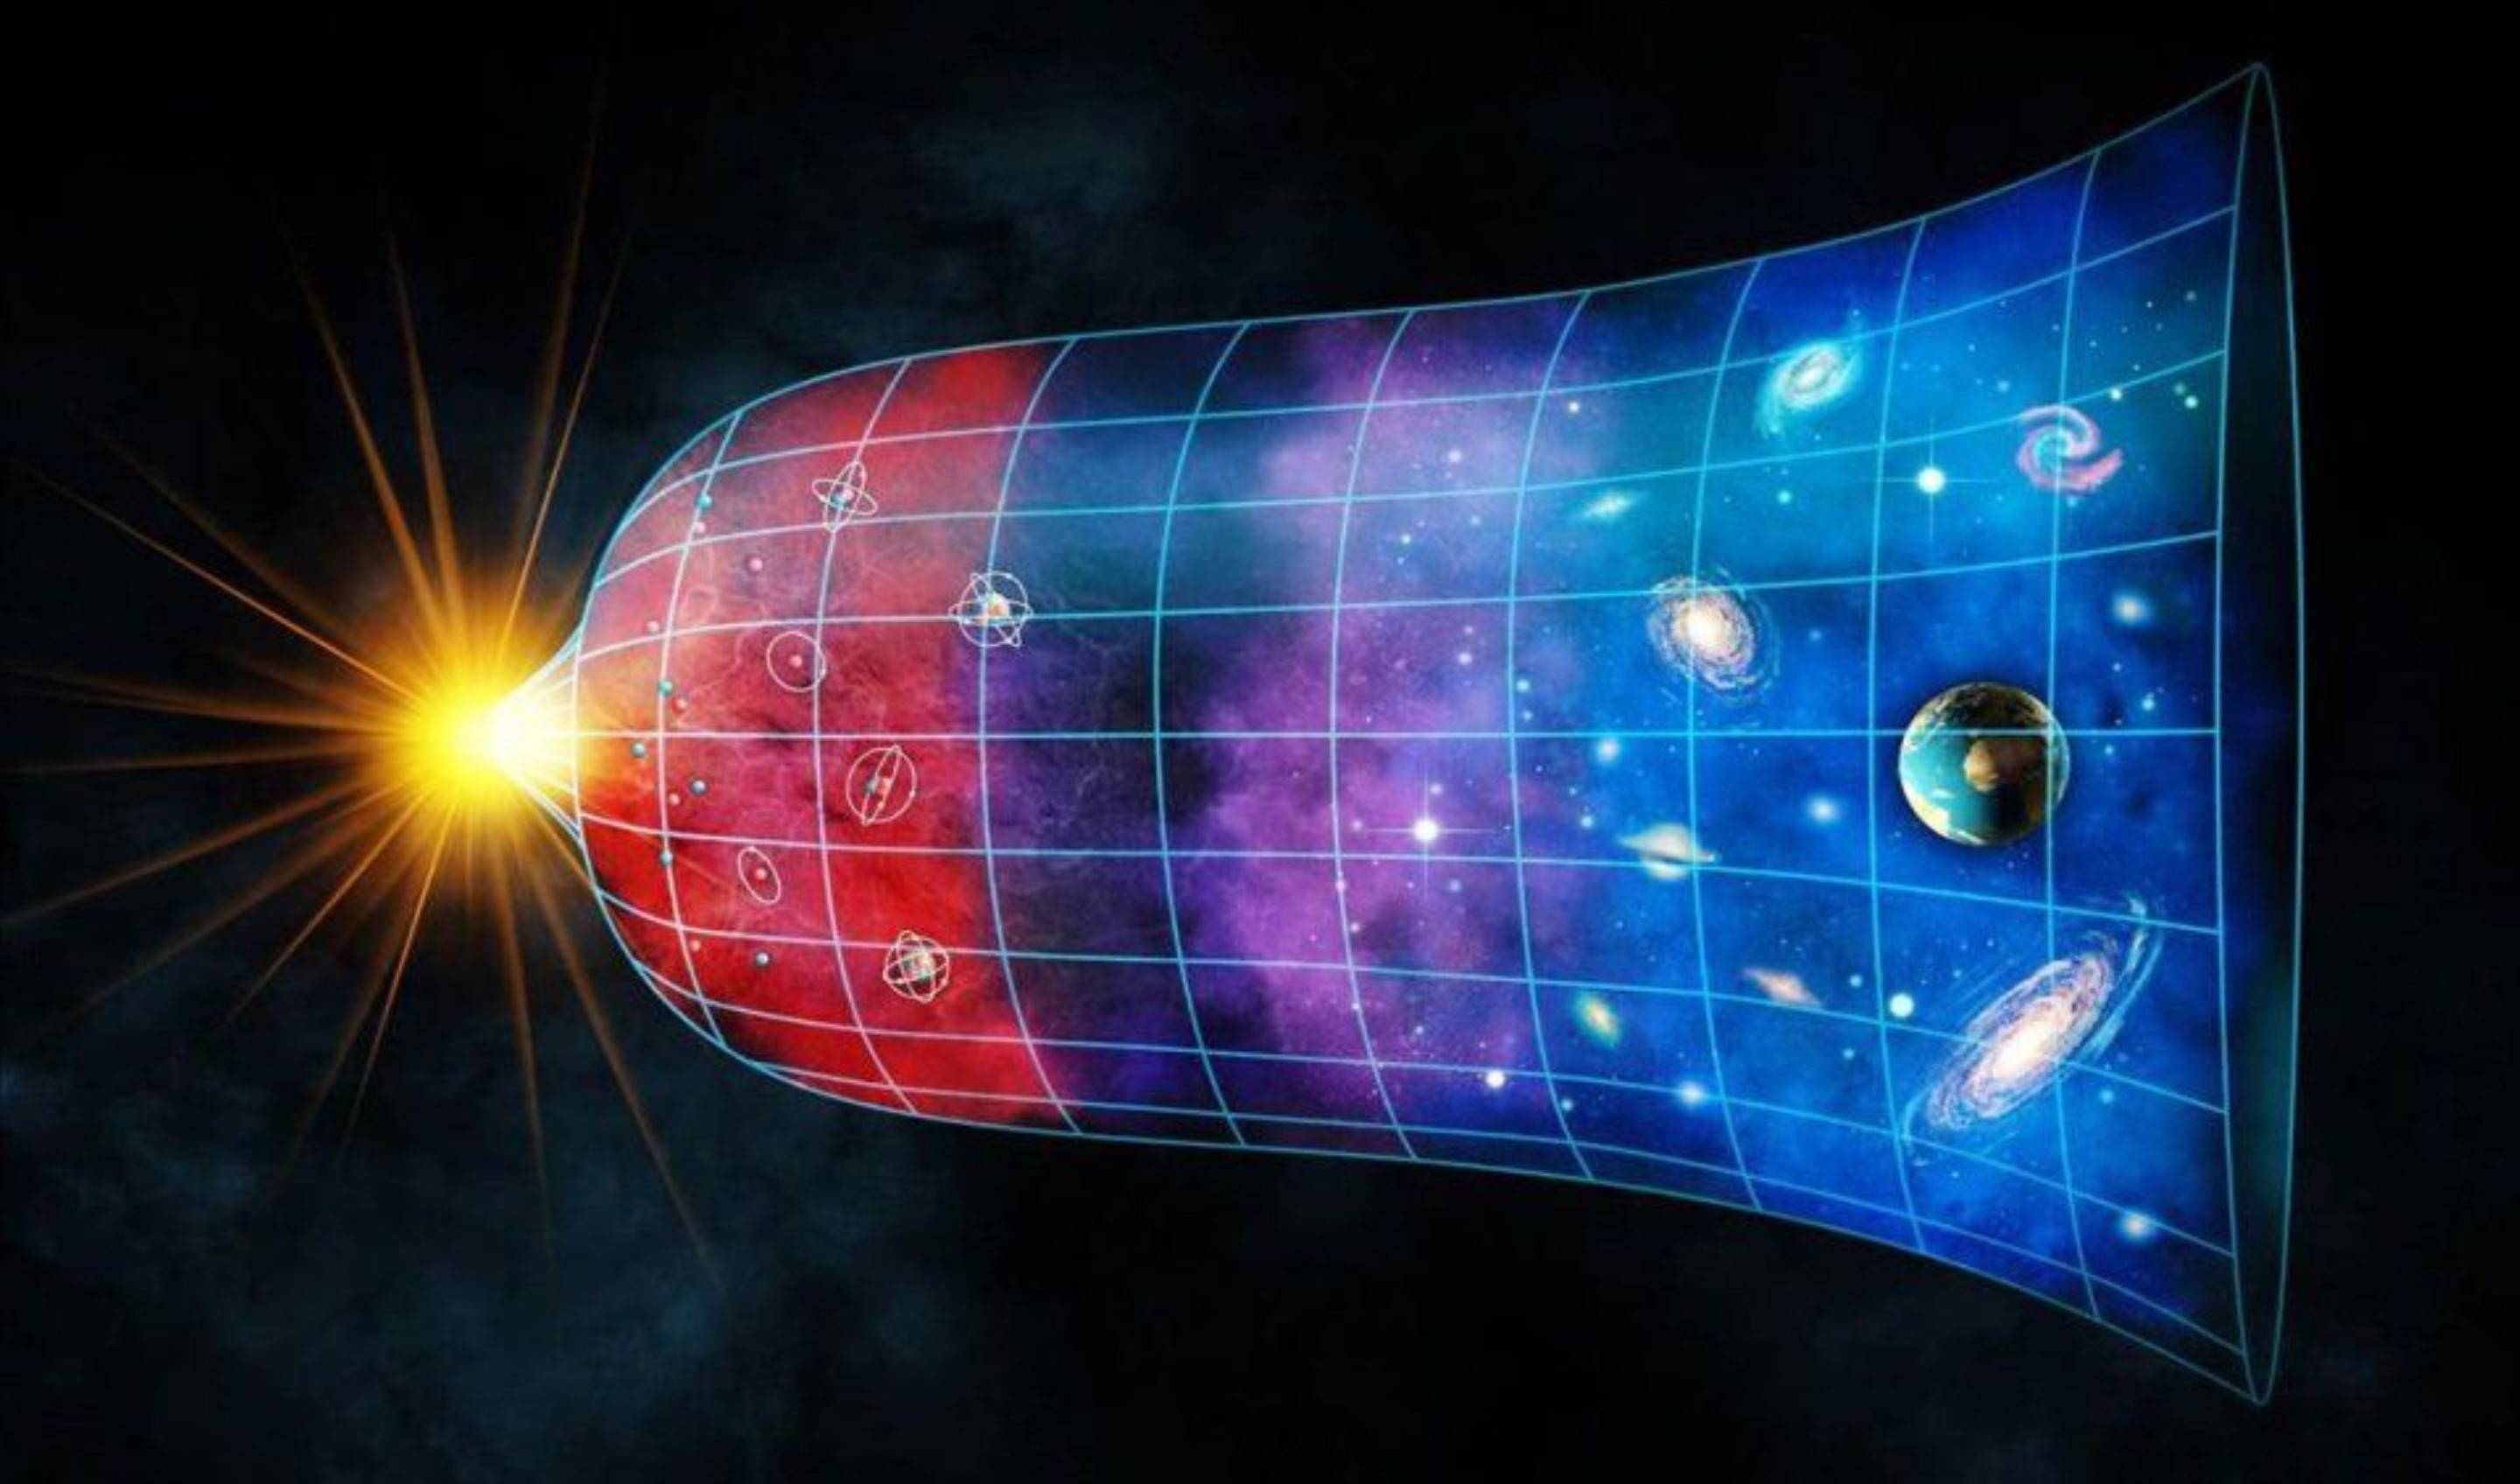 大爆炸宇宙模型,已经是现代宇宙学的标准模型,也就是这个理论成为全